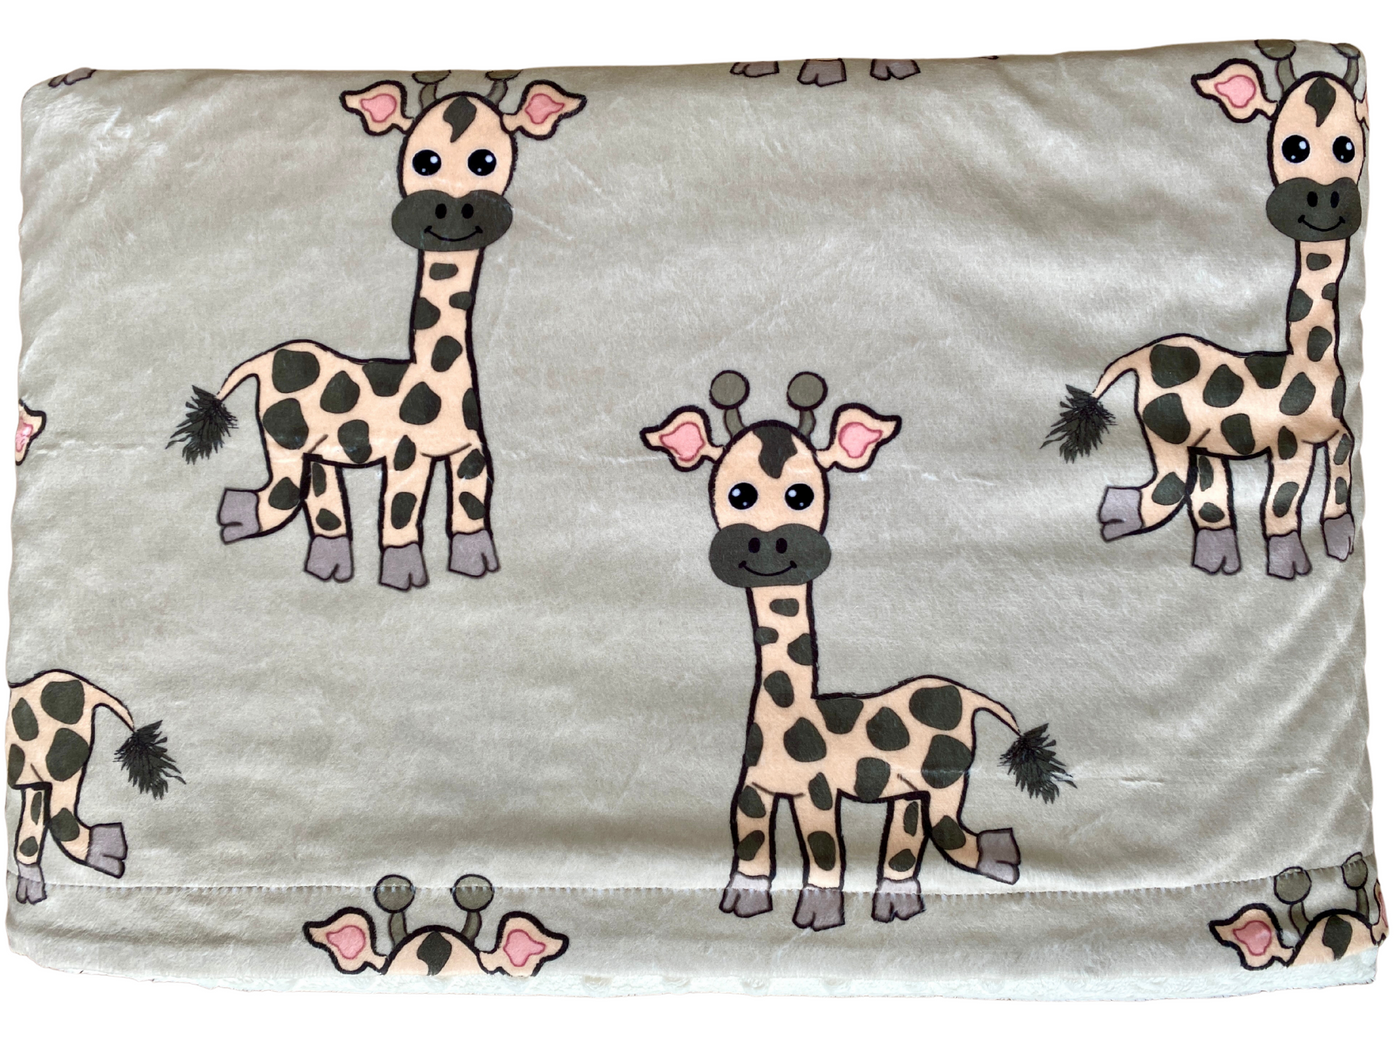 Giant Blanket: The Laughing Giraffes